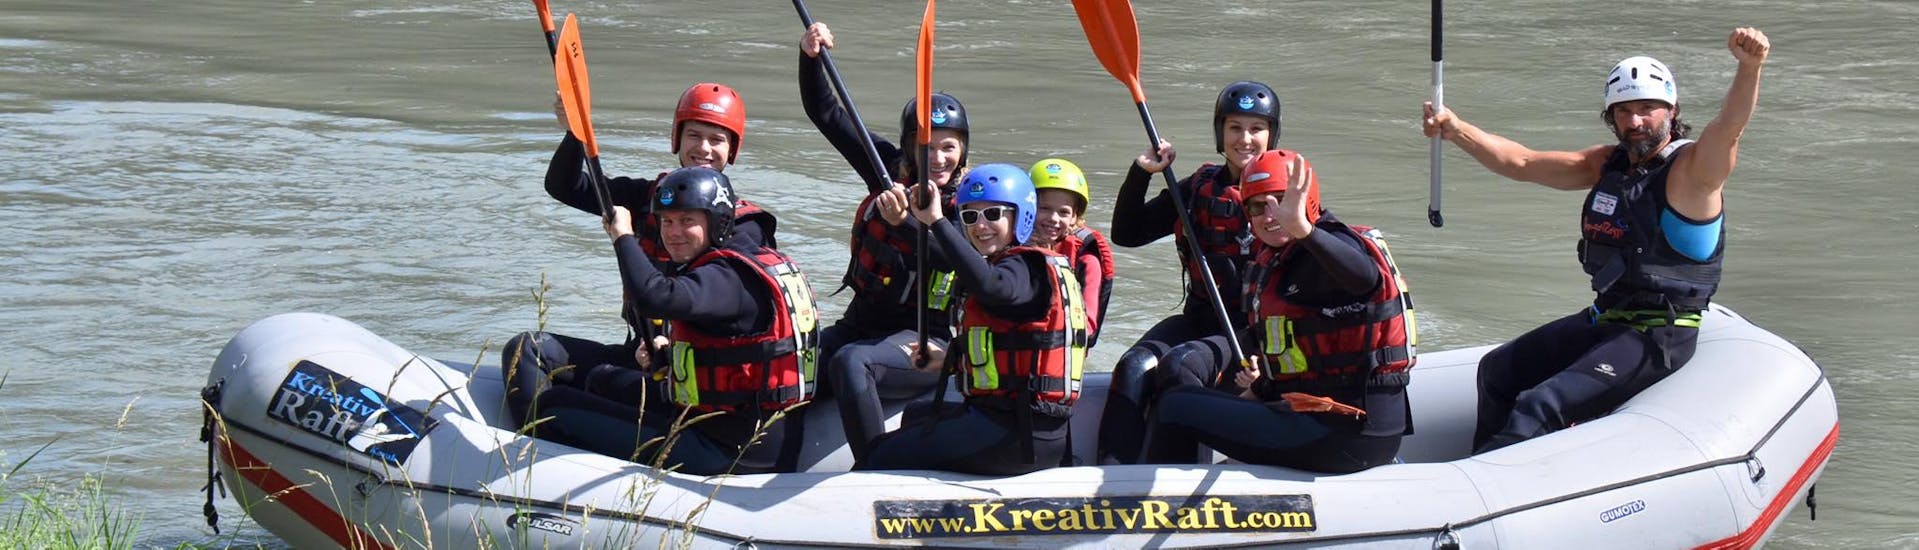 Rafting auf der Rienz - Action & Safety.